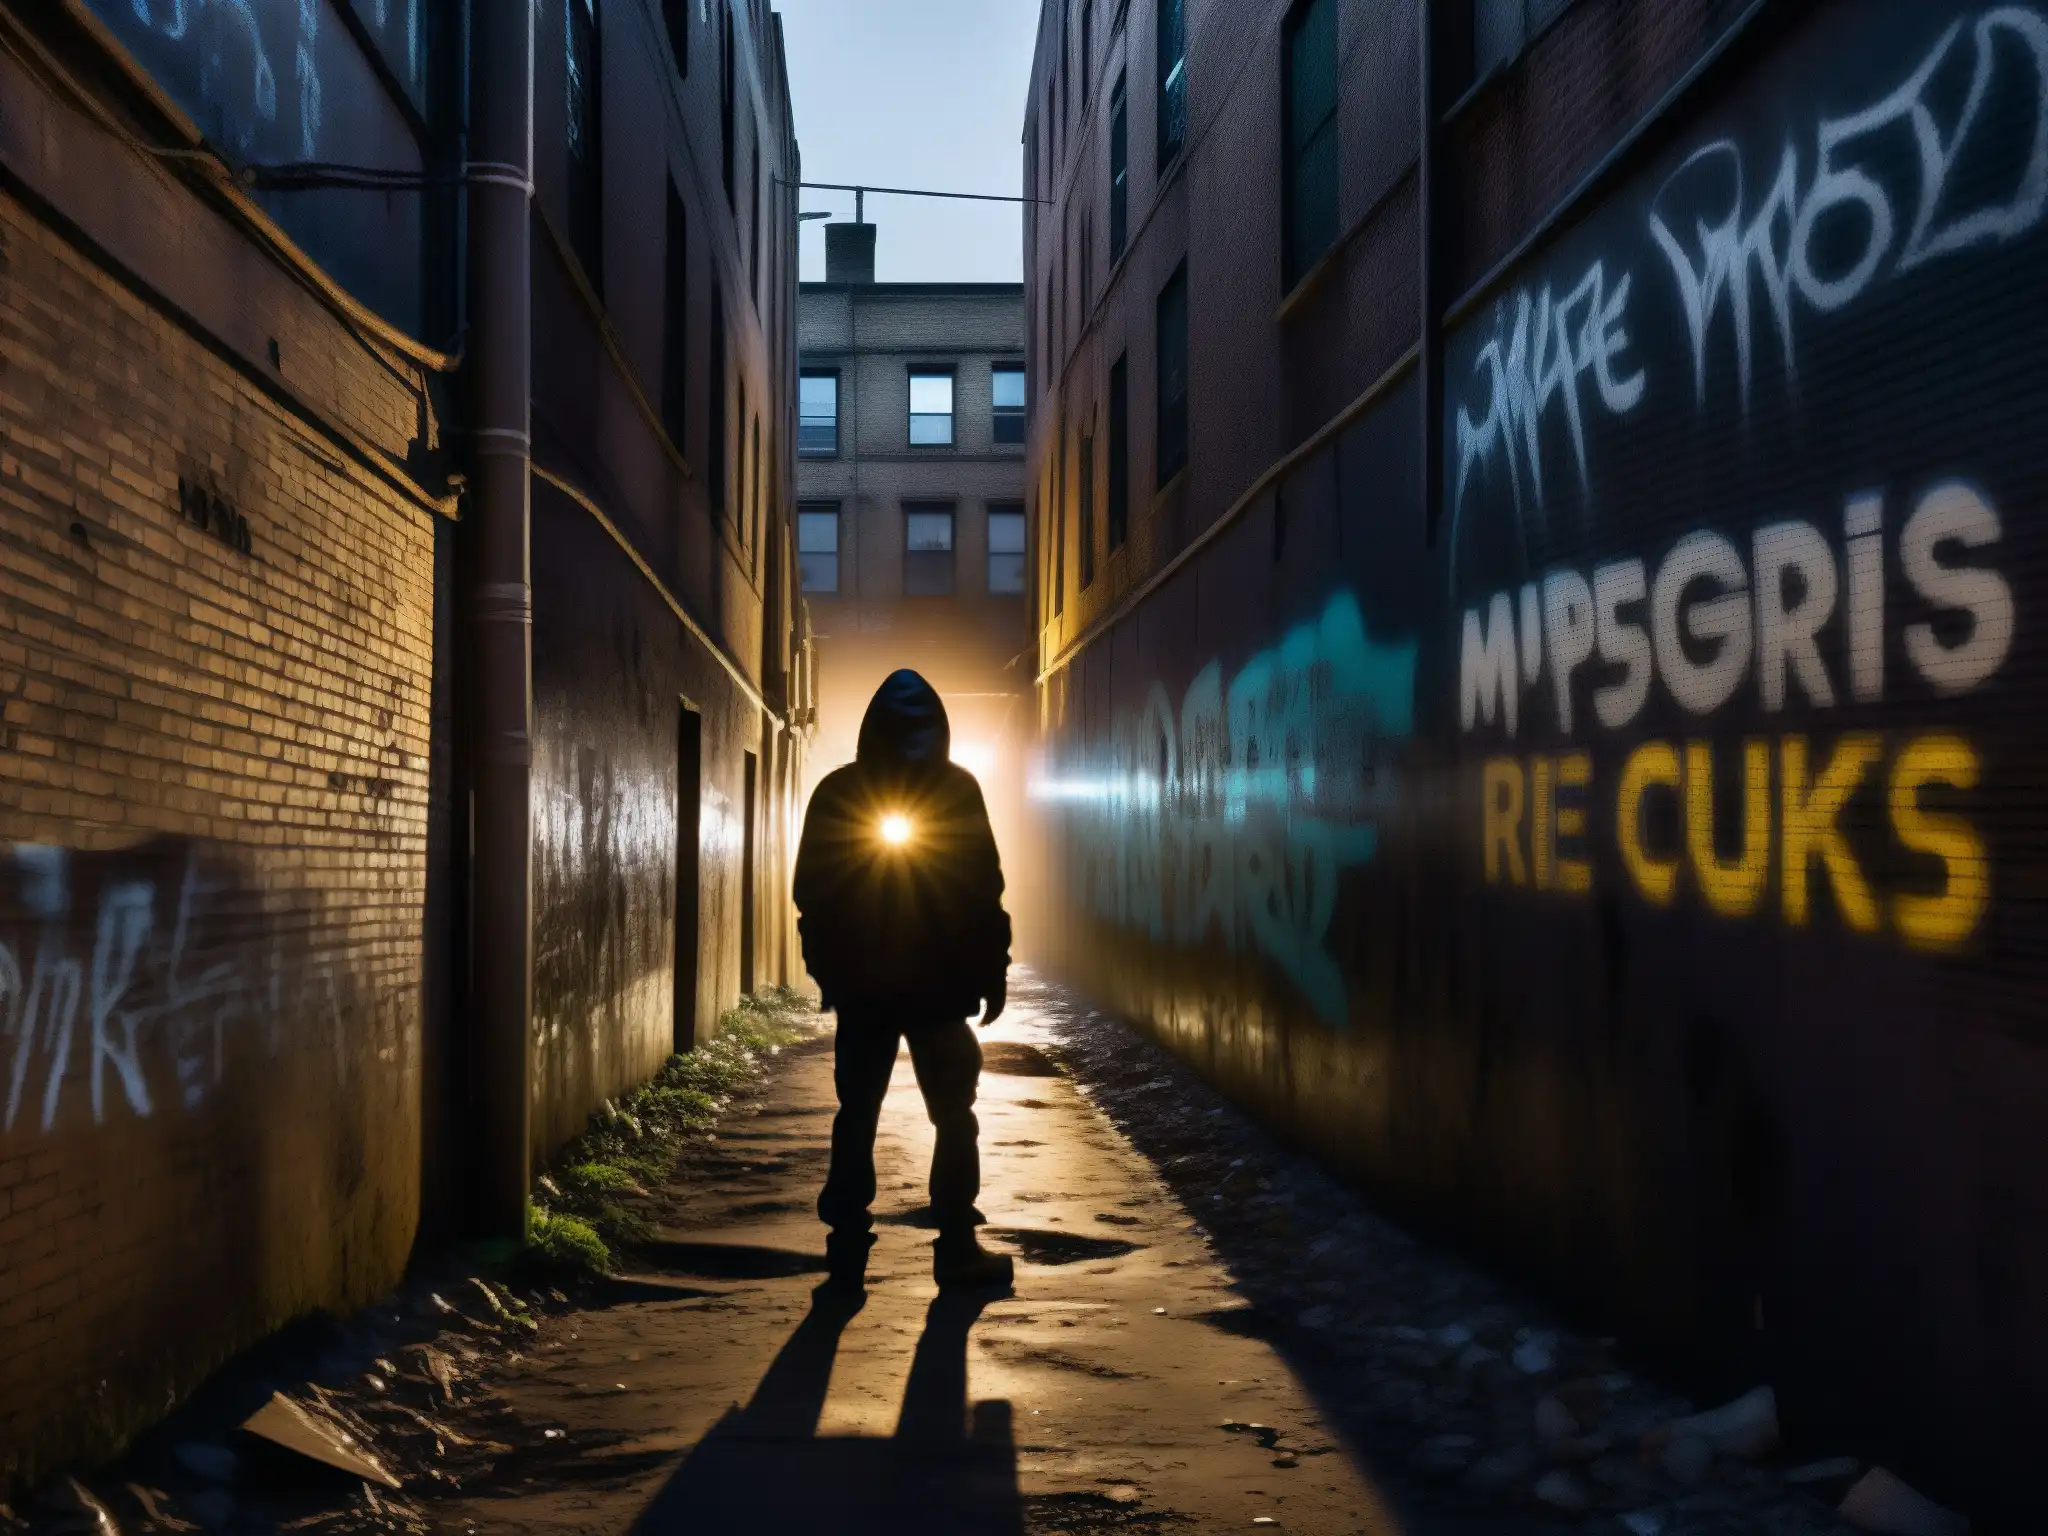 Un oscuro callejón urbano con graffiti y luces parpadeantes